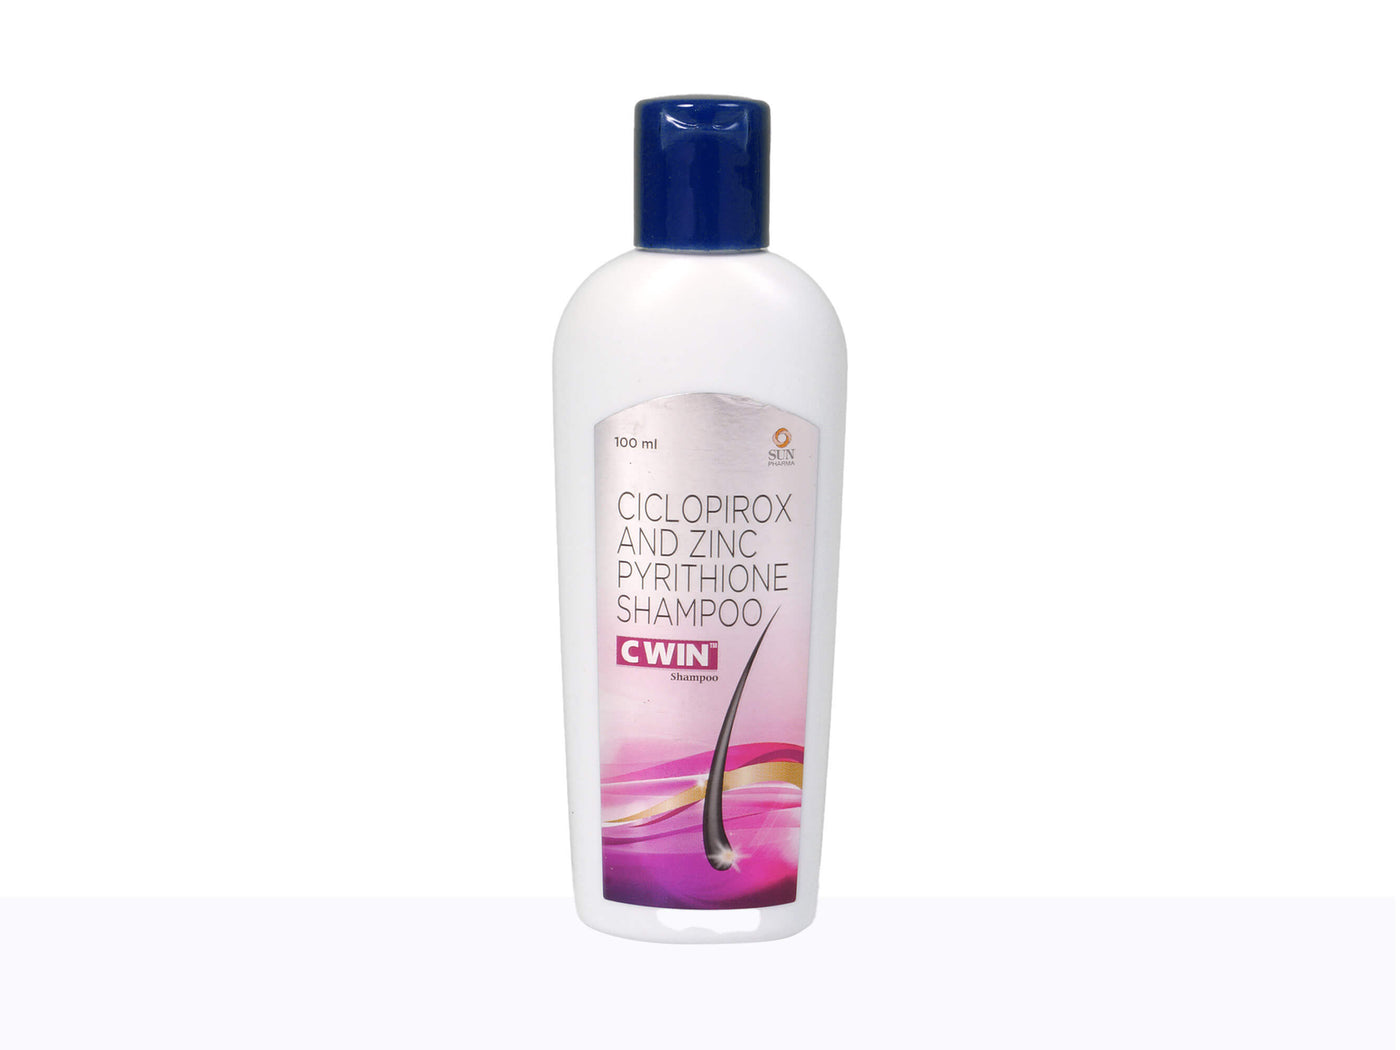 C-win shampoo - Clinikally